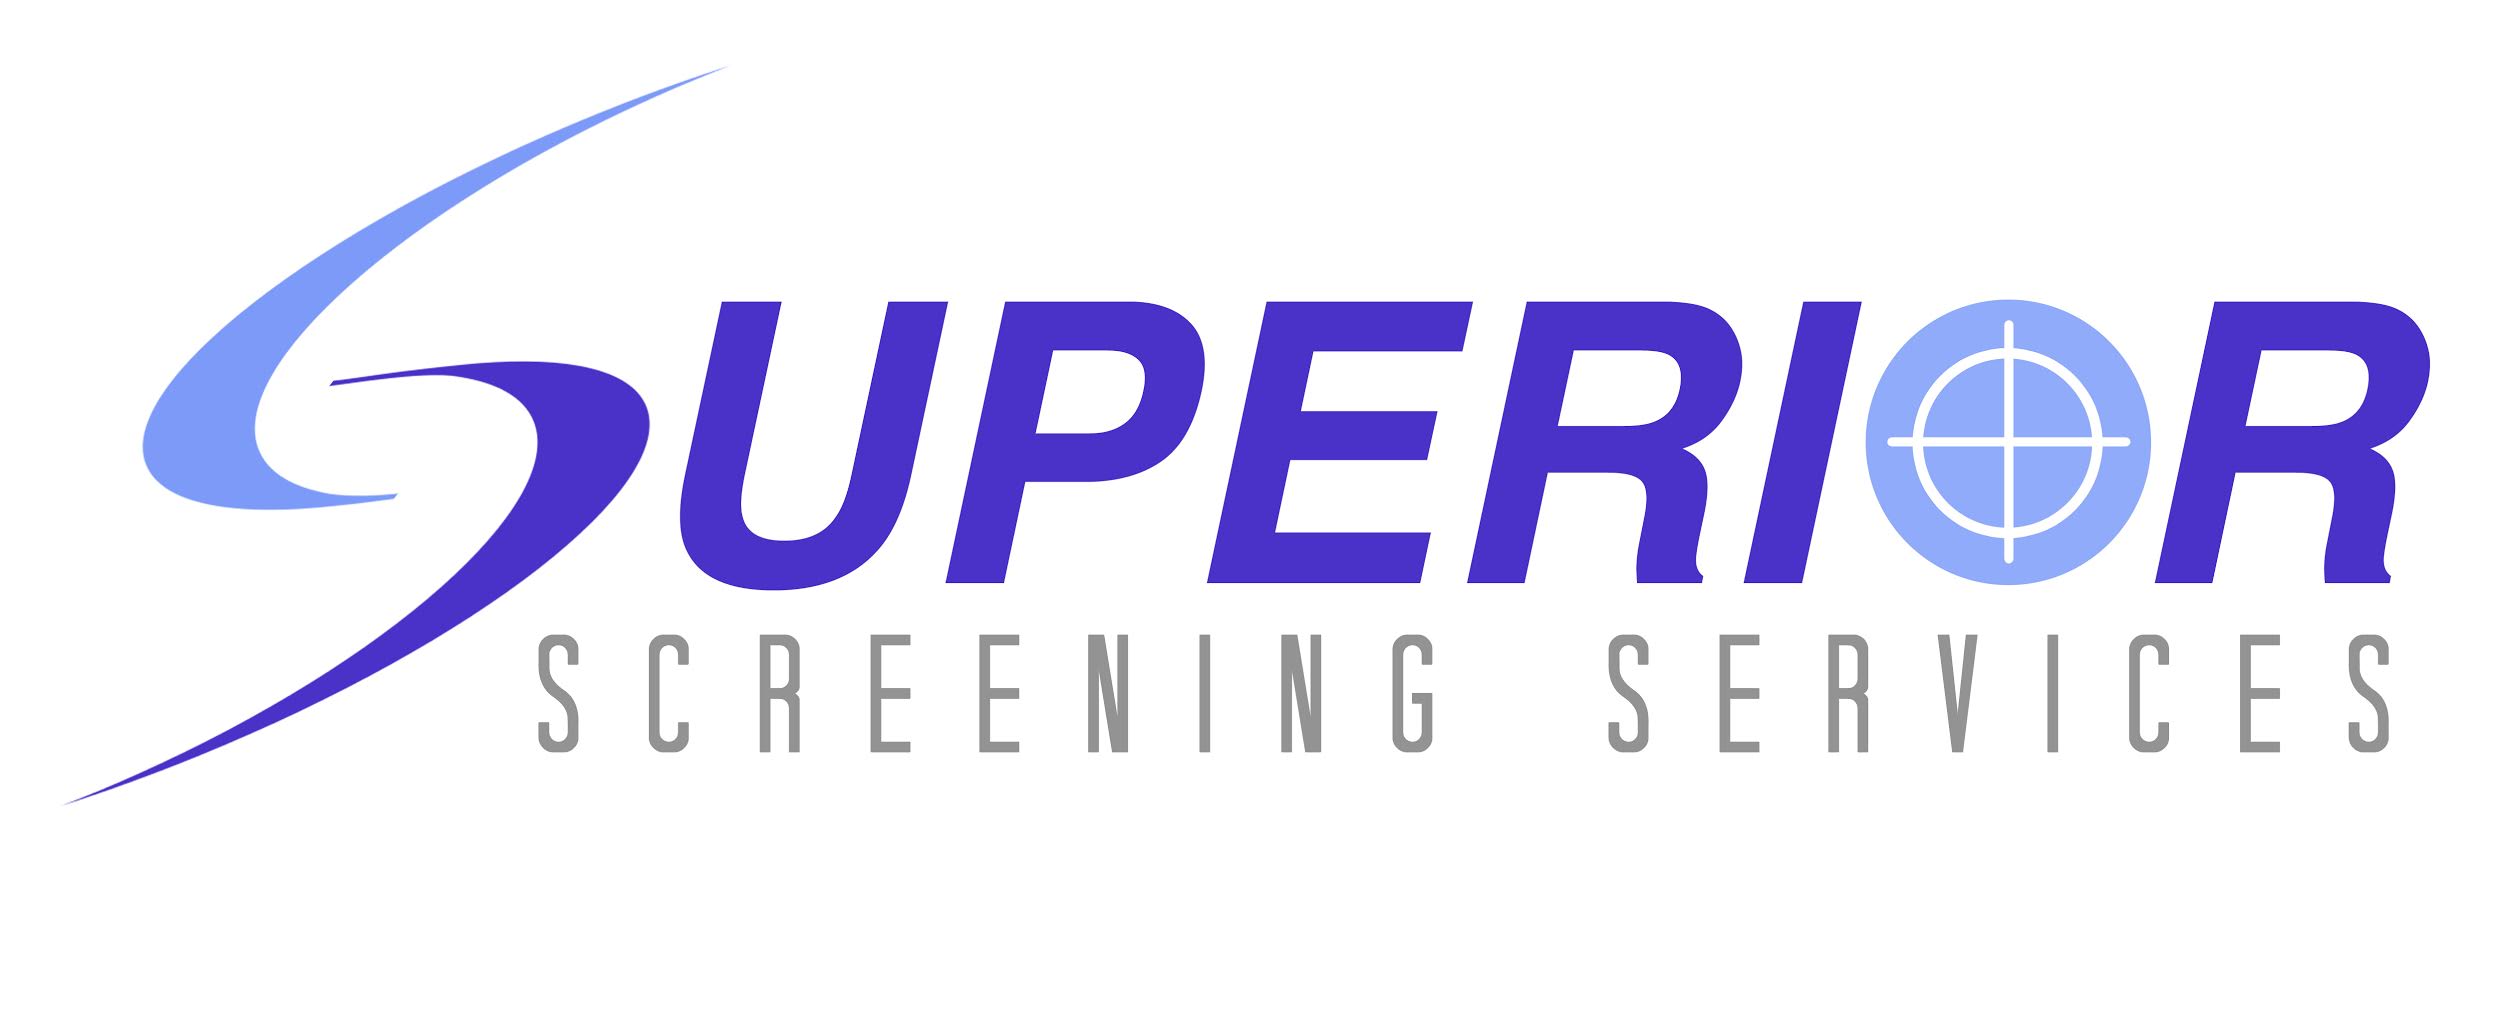 superior_screening_services